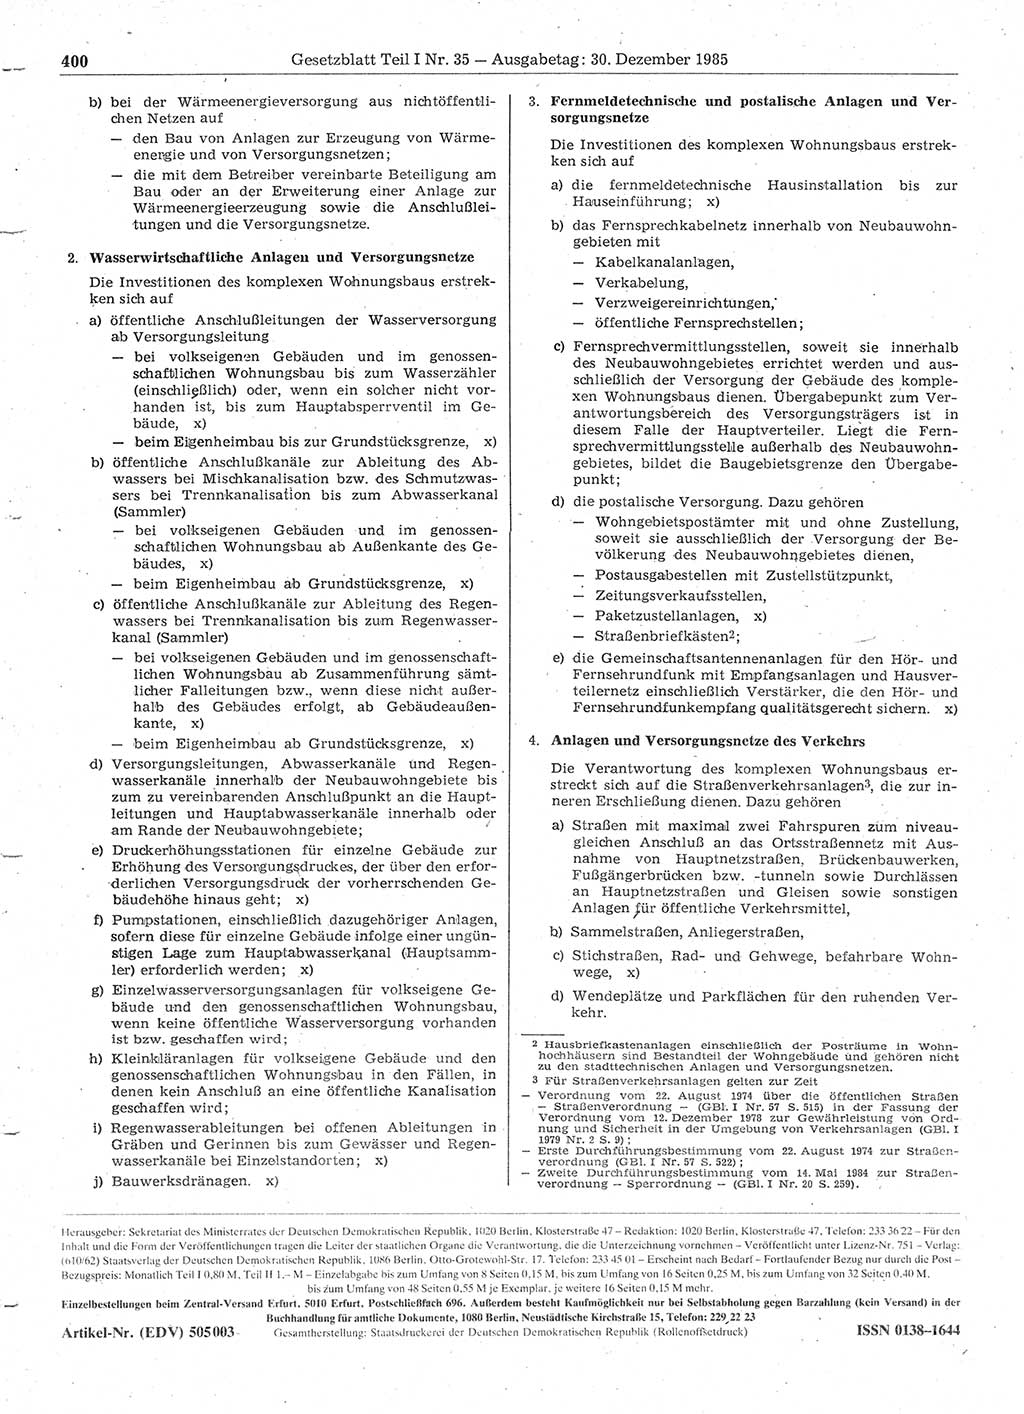 Gesetzblatt (GBl.) der Deutschen Demokratischen Republik (DDR) Teil Ⅰ 1985, Seite 400 (GBl. DDR Ⅰ 1985, S. 400)